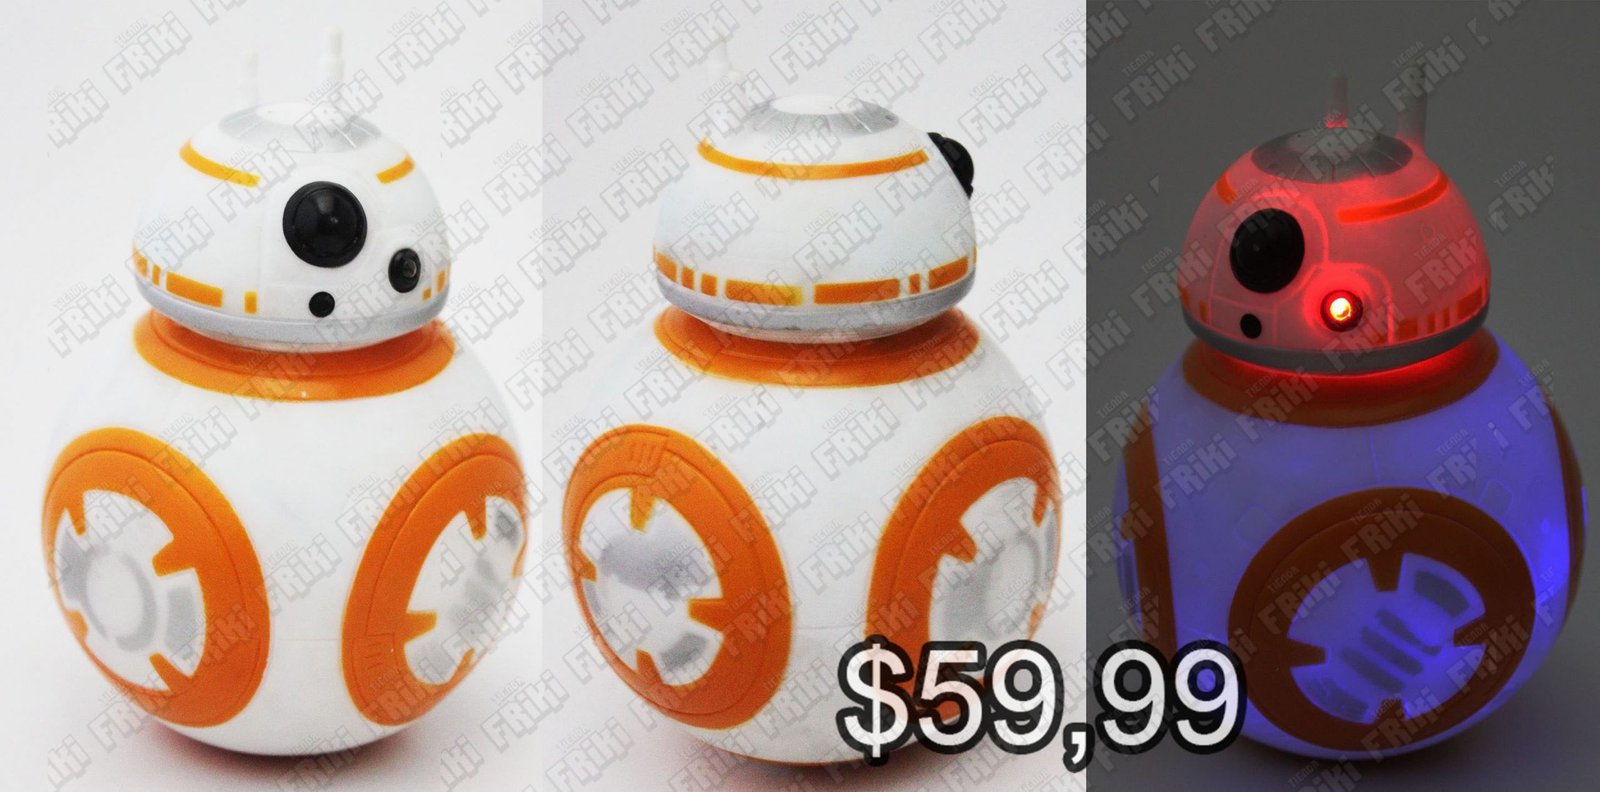 Figura Película Star Wars BB-8 Sphero Ecuador Comprar Venden, Bonita Apariencia ideal para los fans, practica, Hermoso material plástico Color como en la imagen Estado nuevo